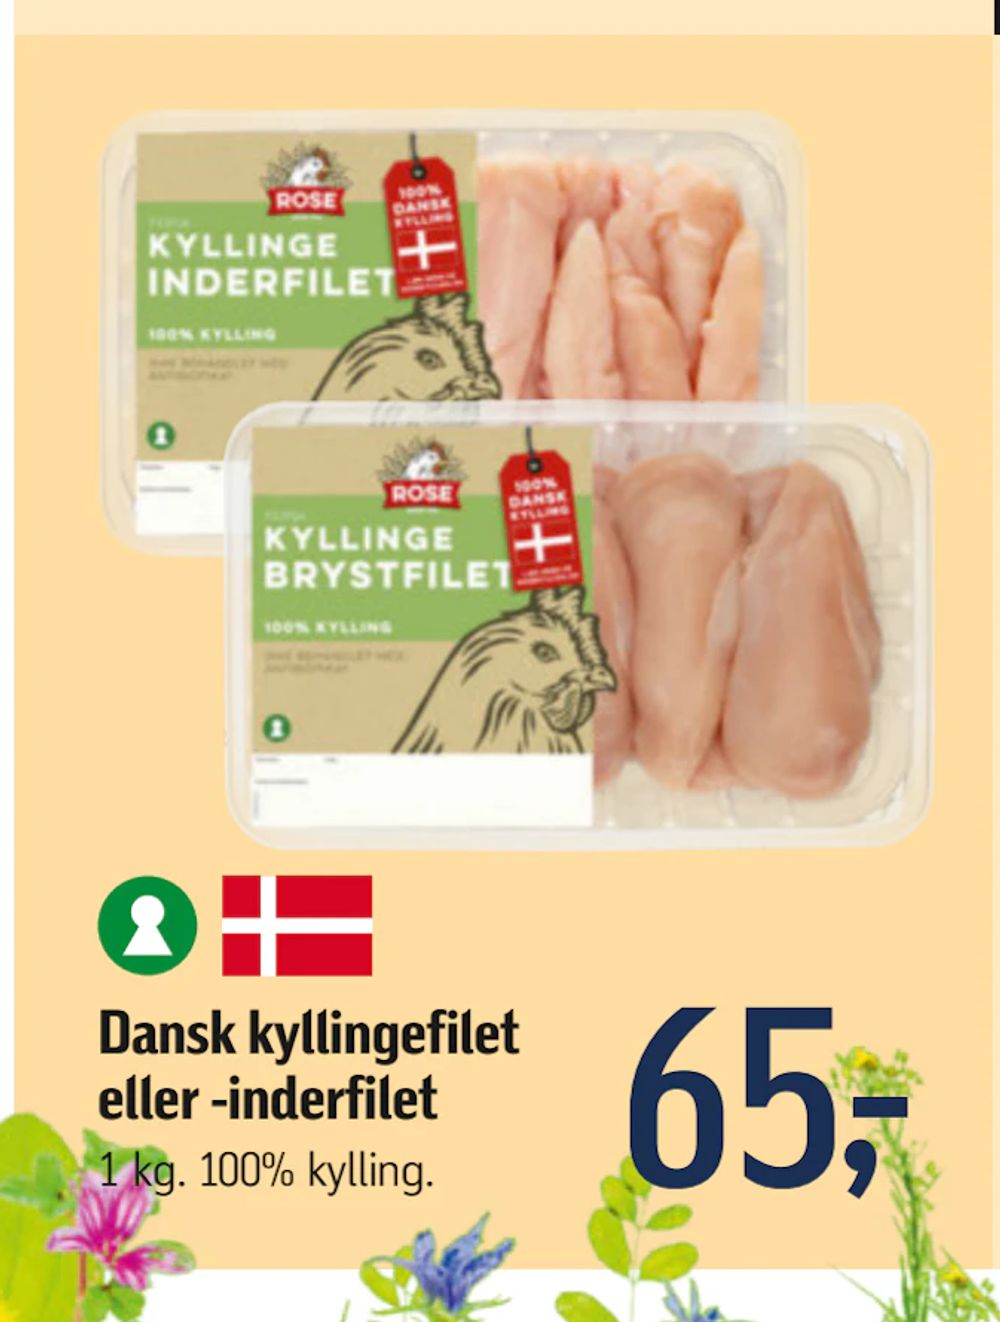 Tilbud på Dansk kyllingefilet eller -inderfilet fra føtex til 65 kr.